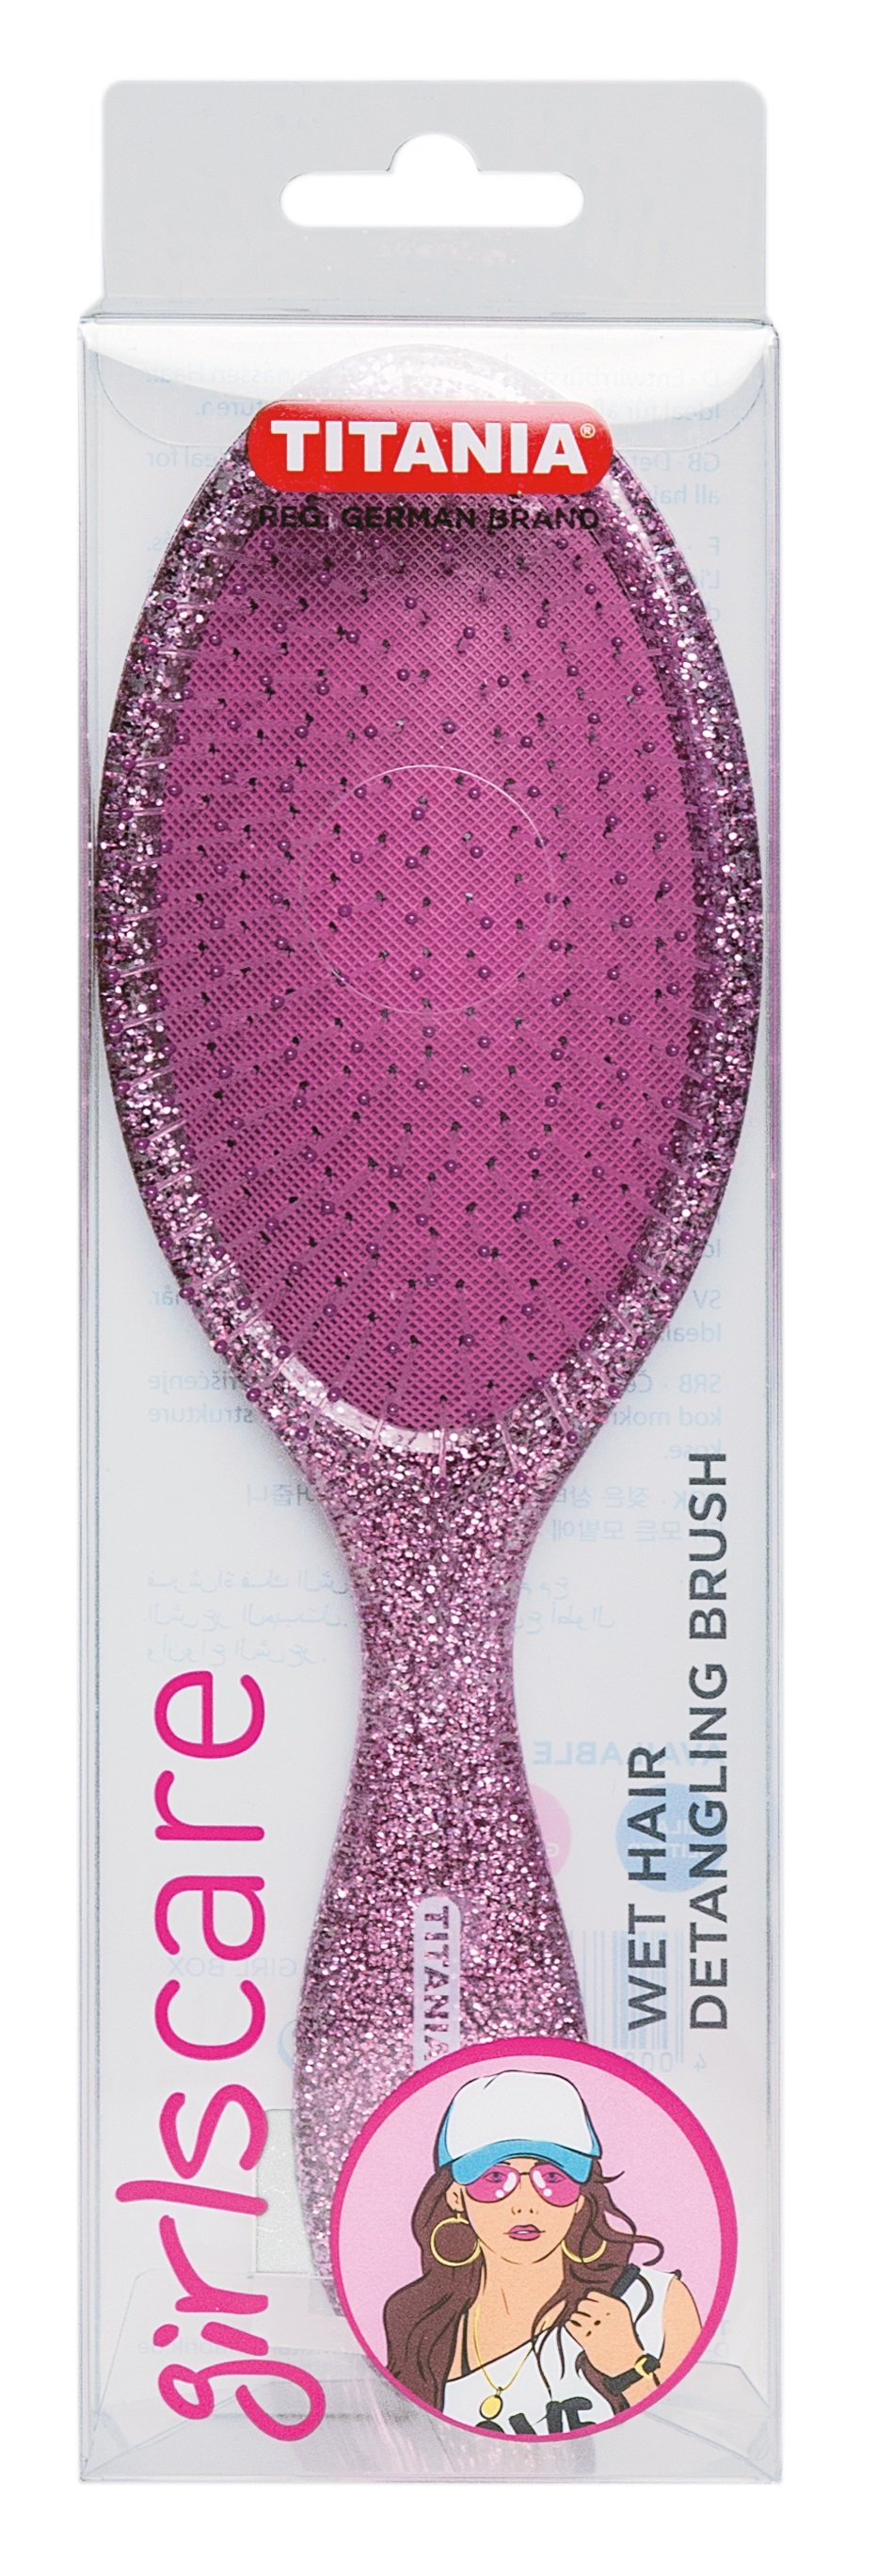 Щетка для длинных волос массажная Titania, розовый (1628-G GIRL BOX роз) - фото 1